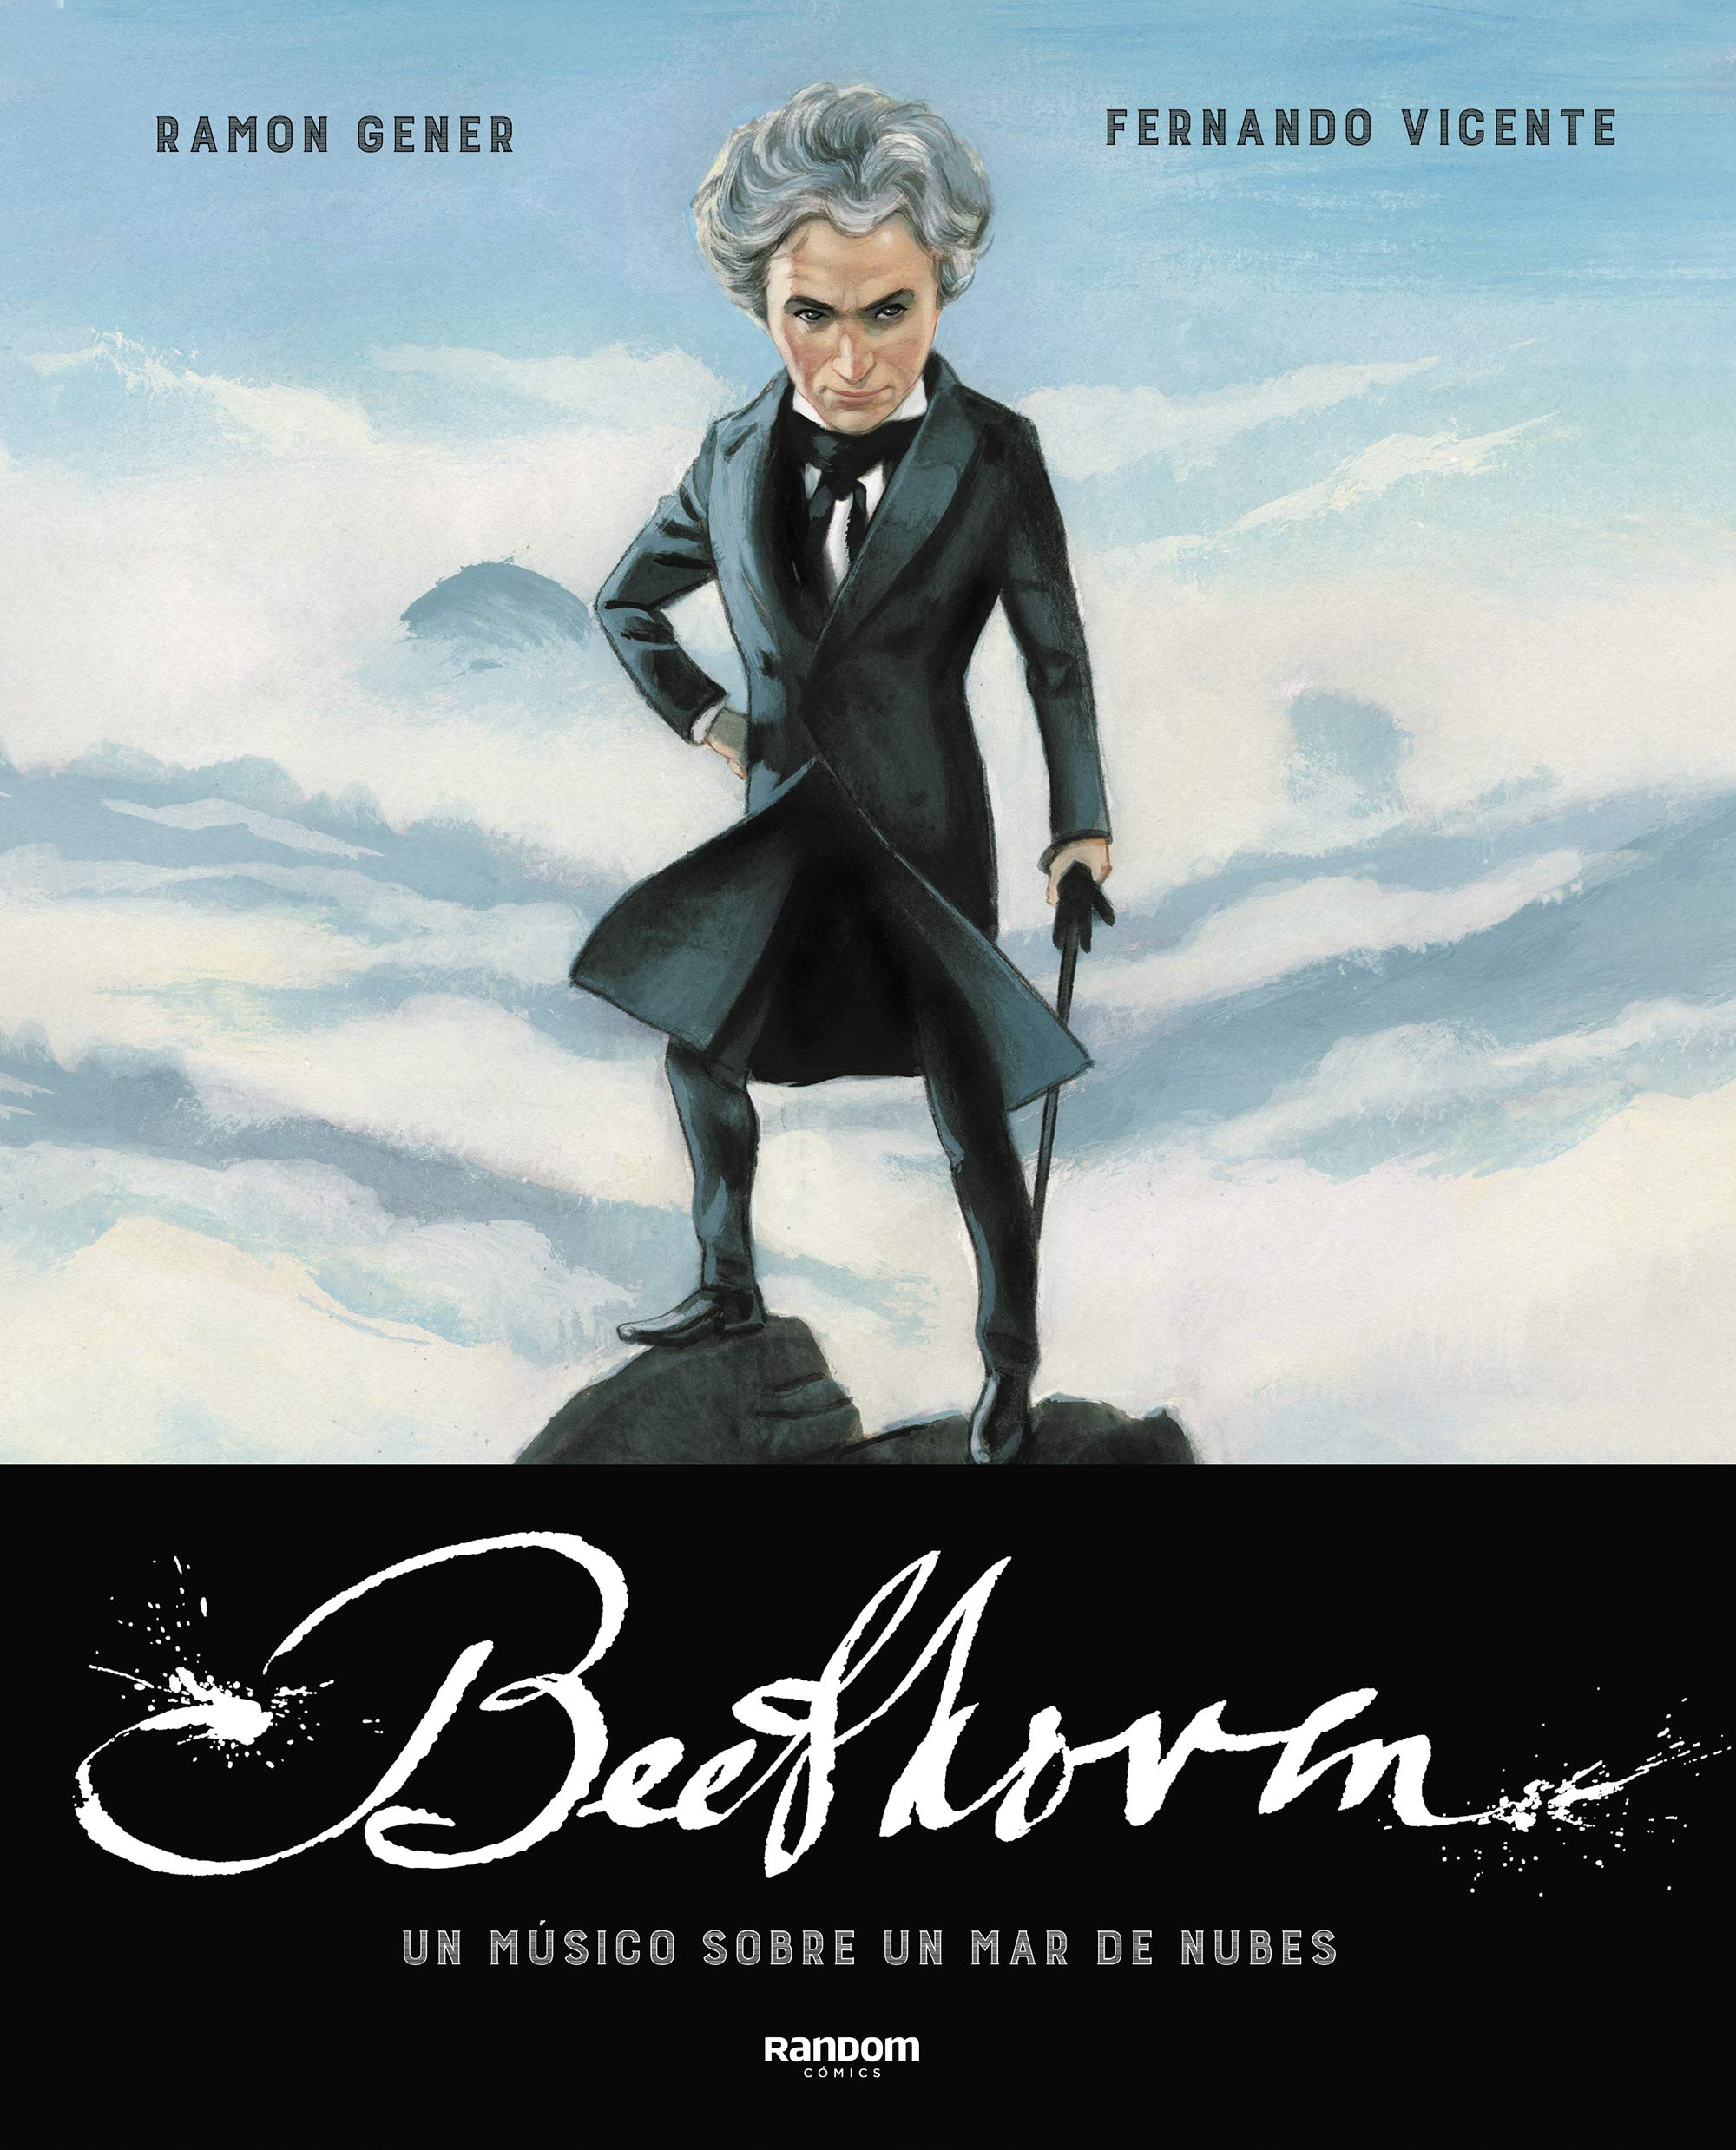 Beethoven, la vida del genio de la música en un cómic